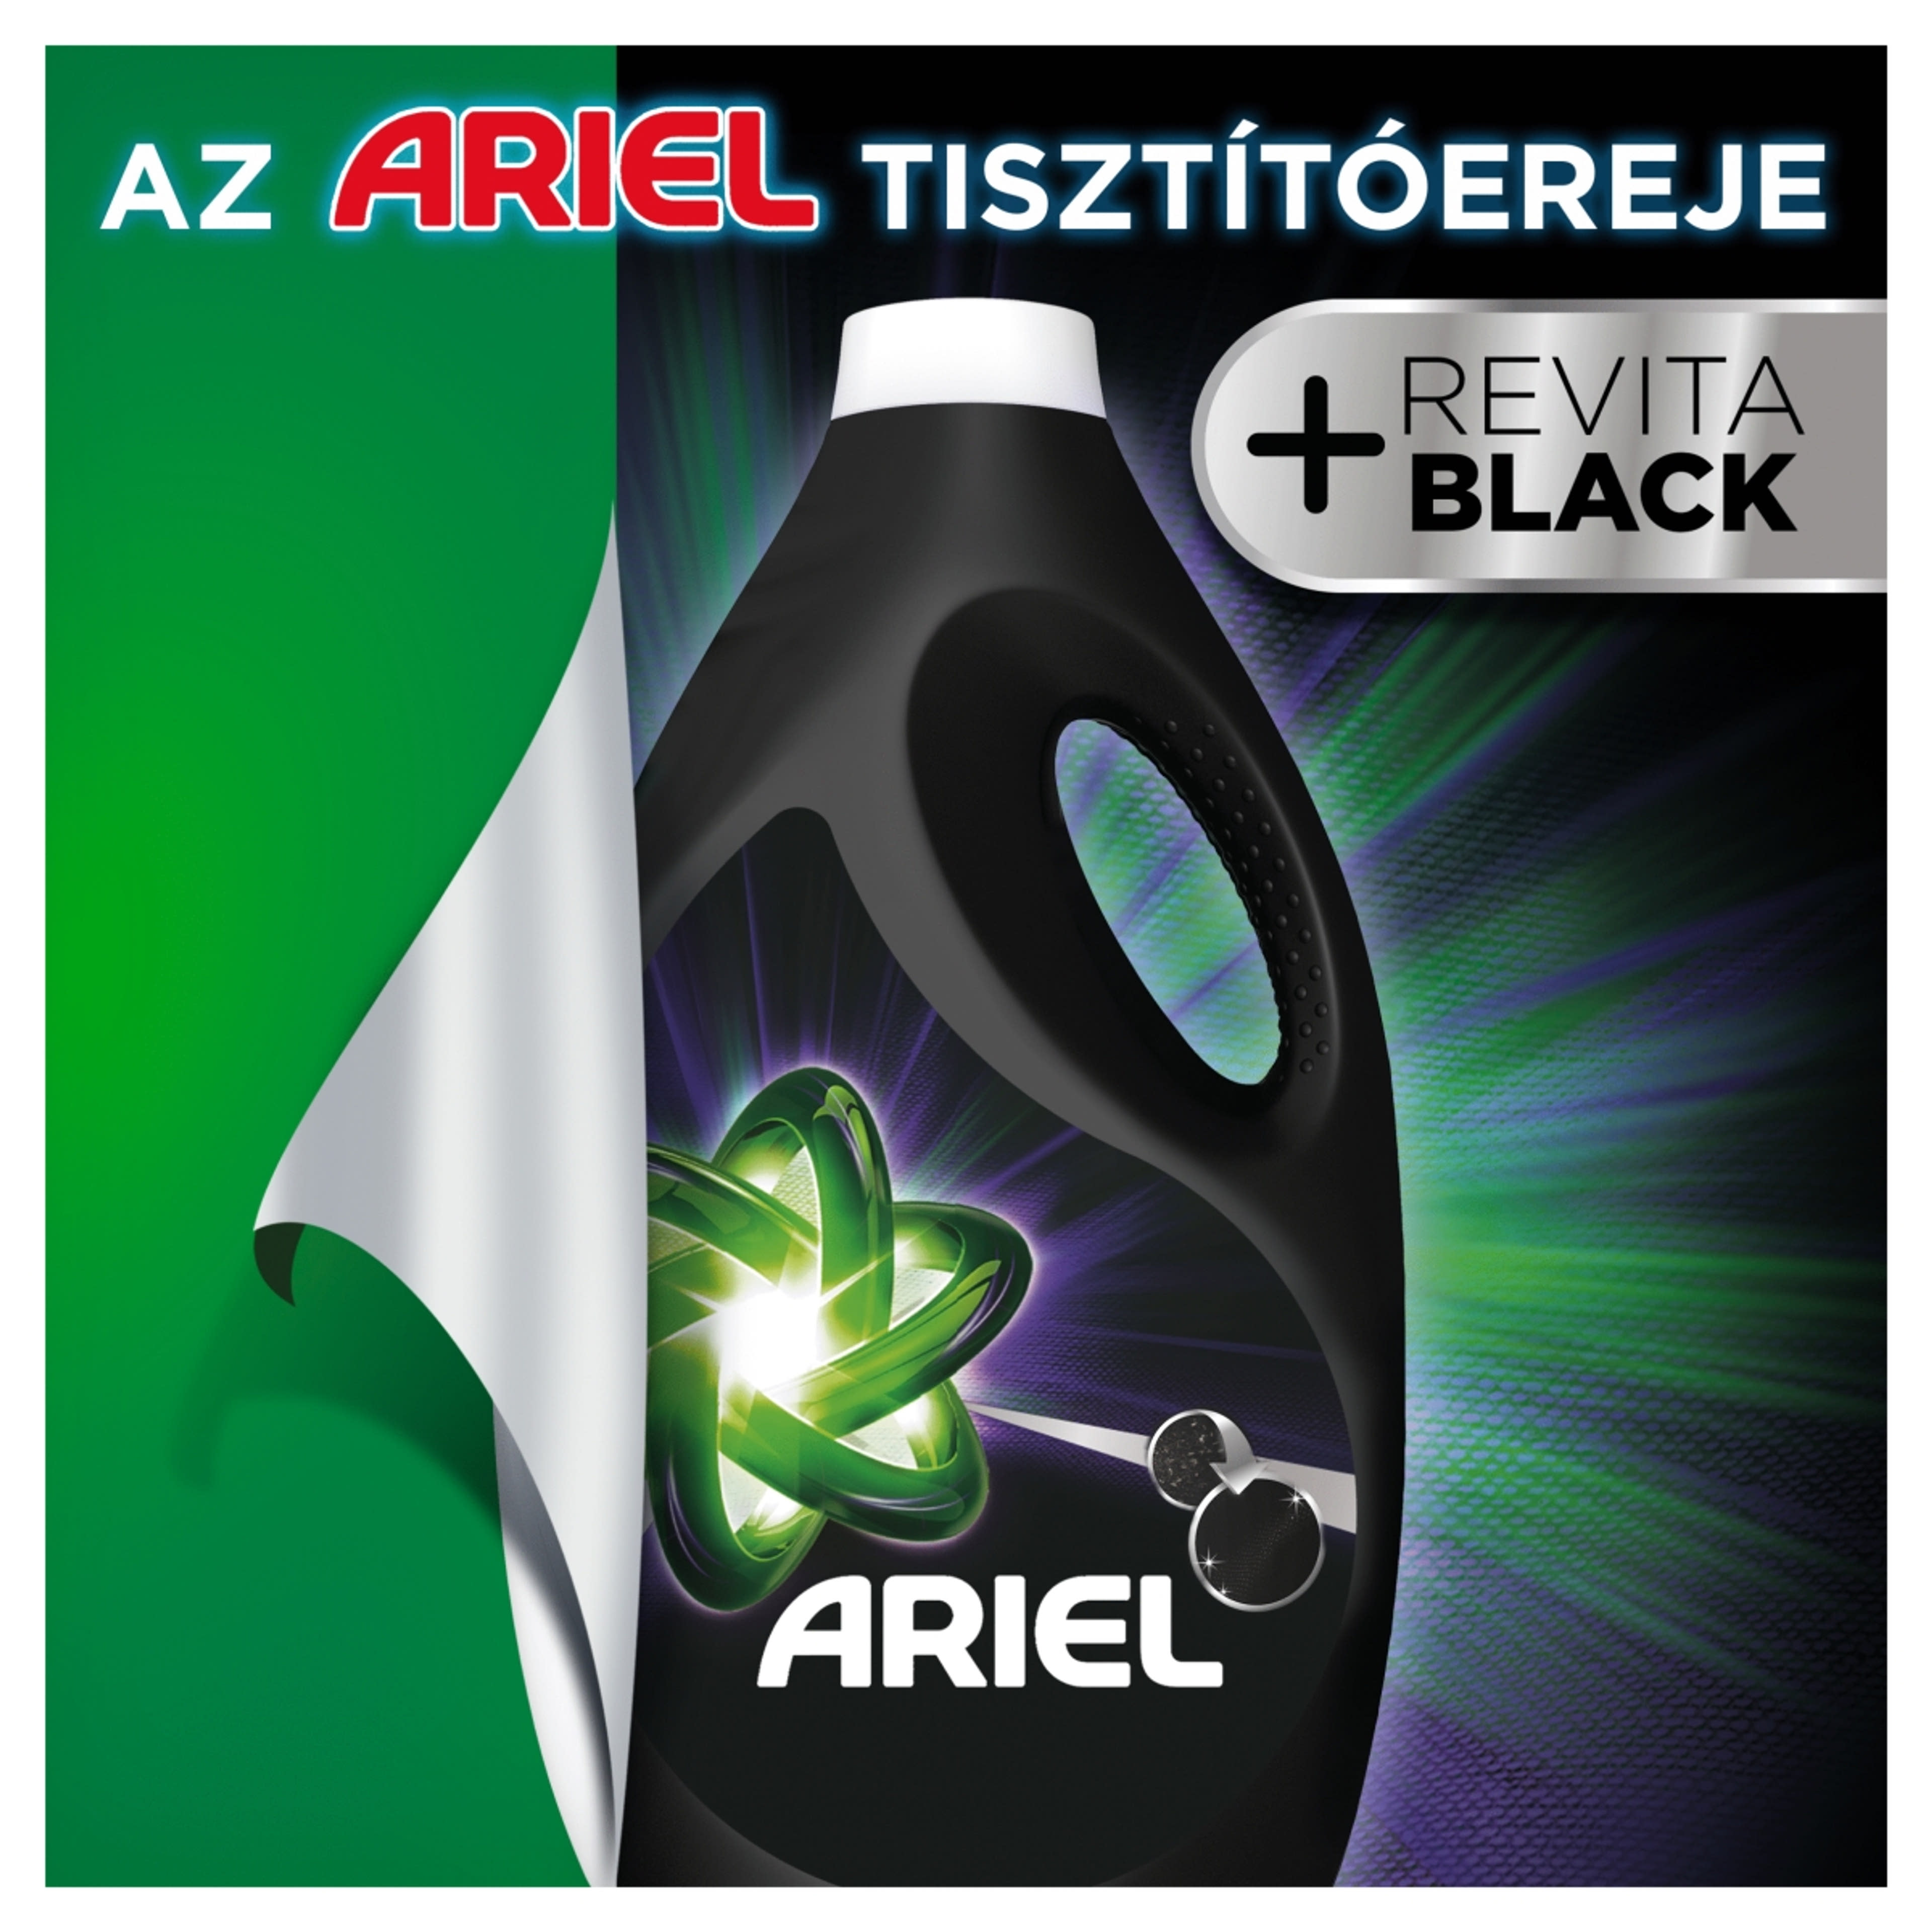 Ariel folyékony mosószer black, 32 mosás - 1760 ml-3